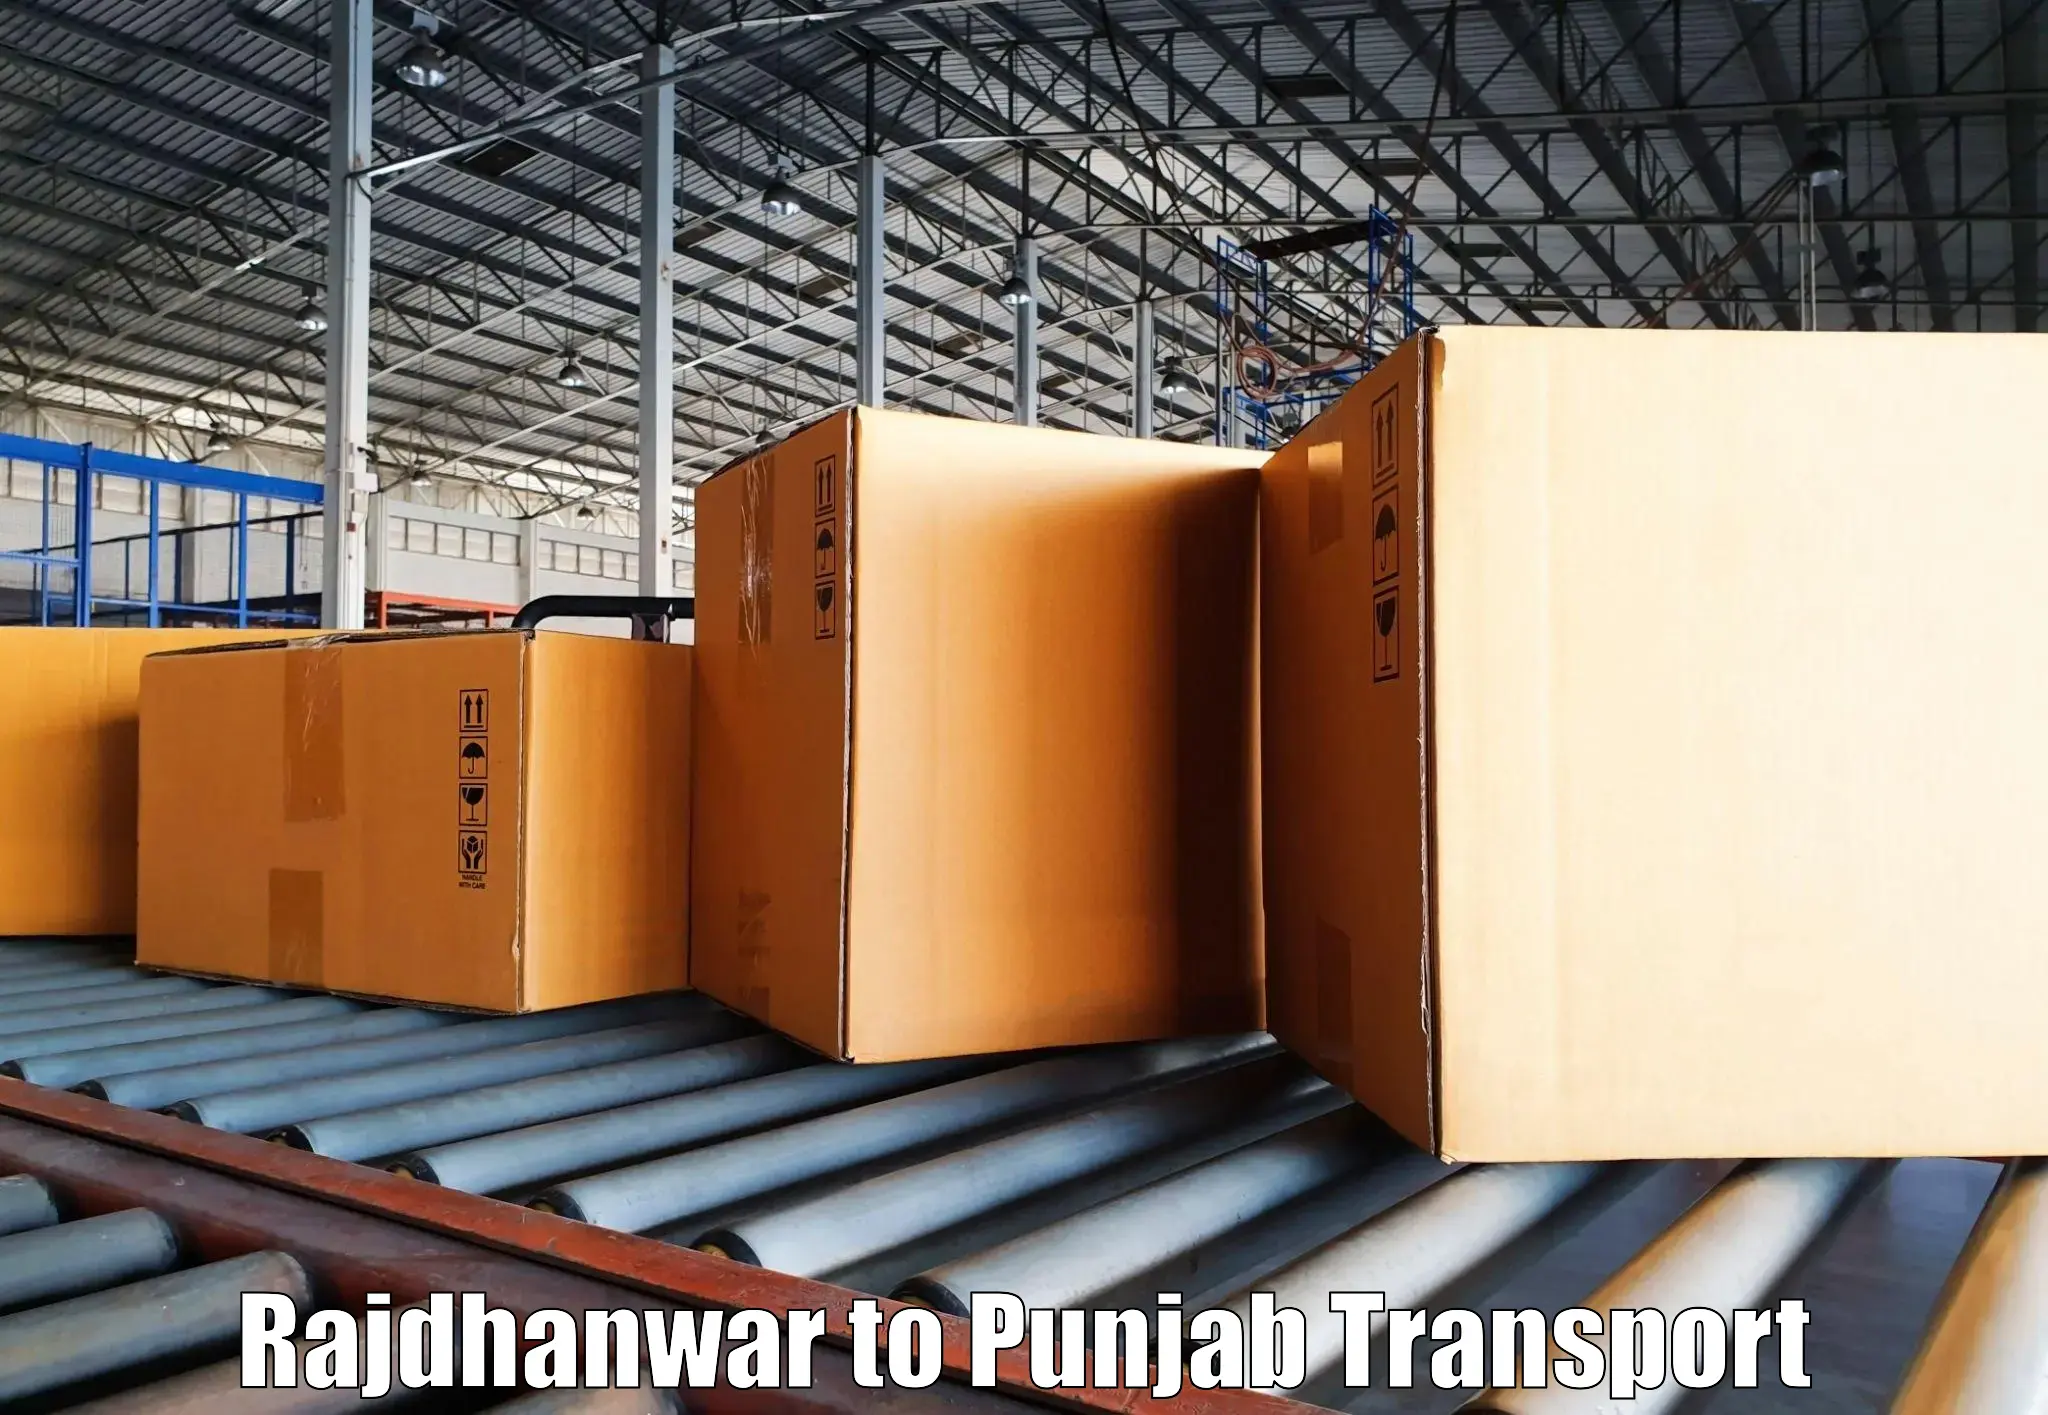 Commercial transport service Rajdhanwar to Dinanagar